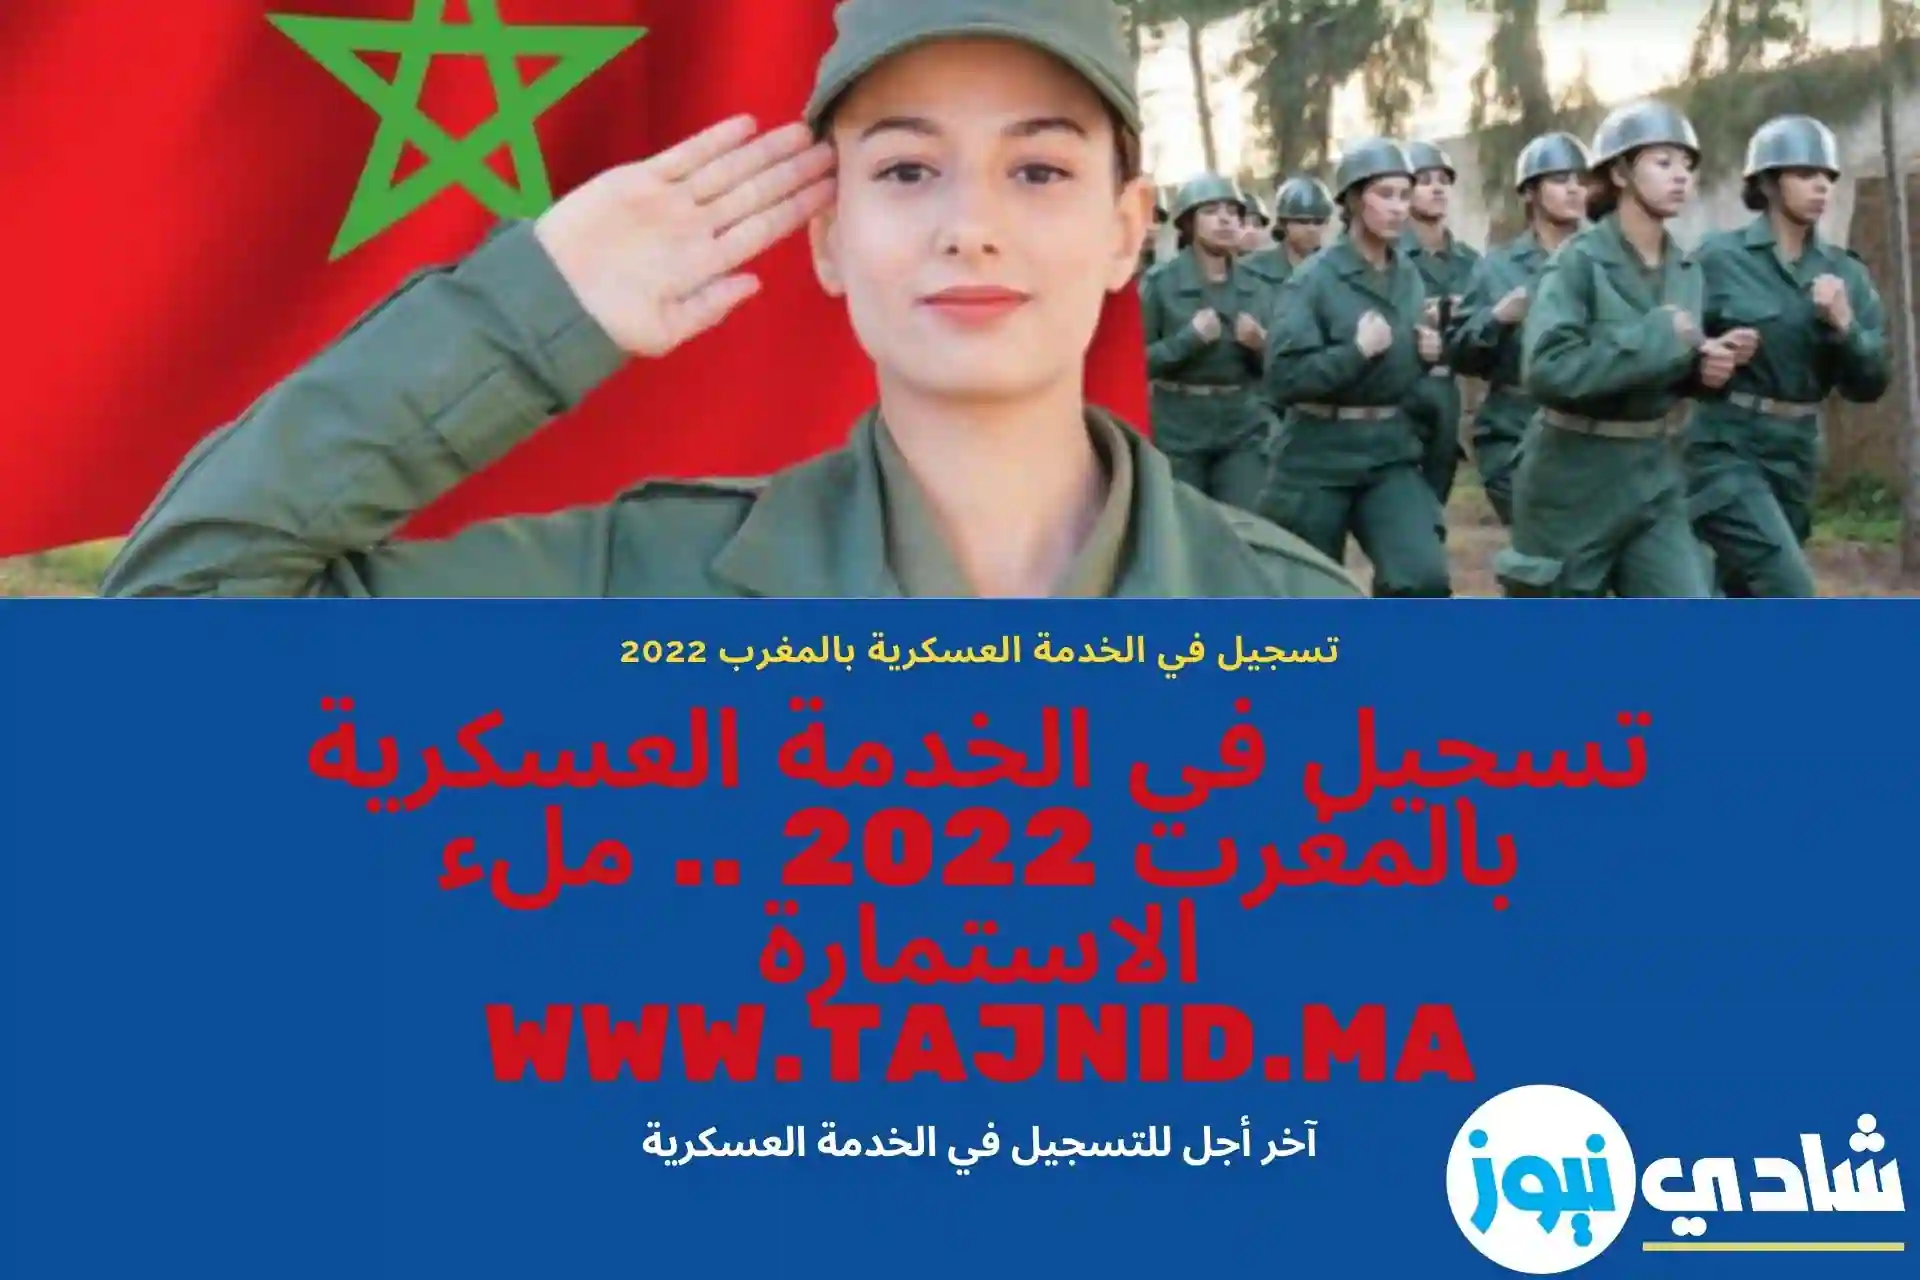 تسجيل في الخدمة العسكرية بالمغرب 2022 .. ملء الاستمارة www.tajnid.ma